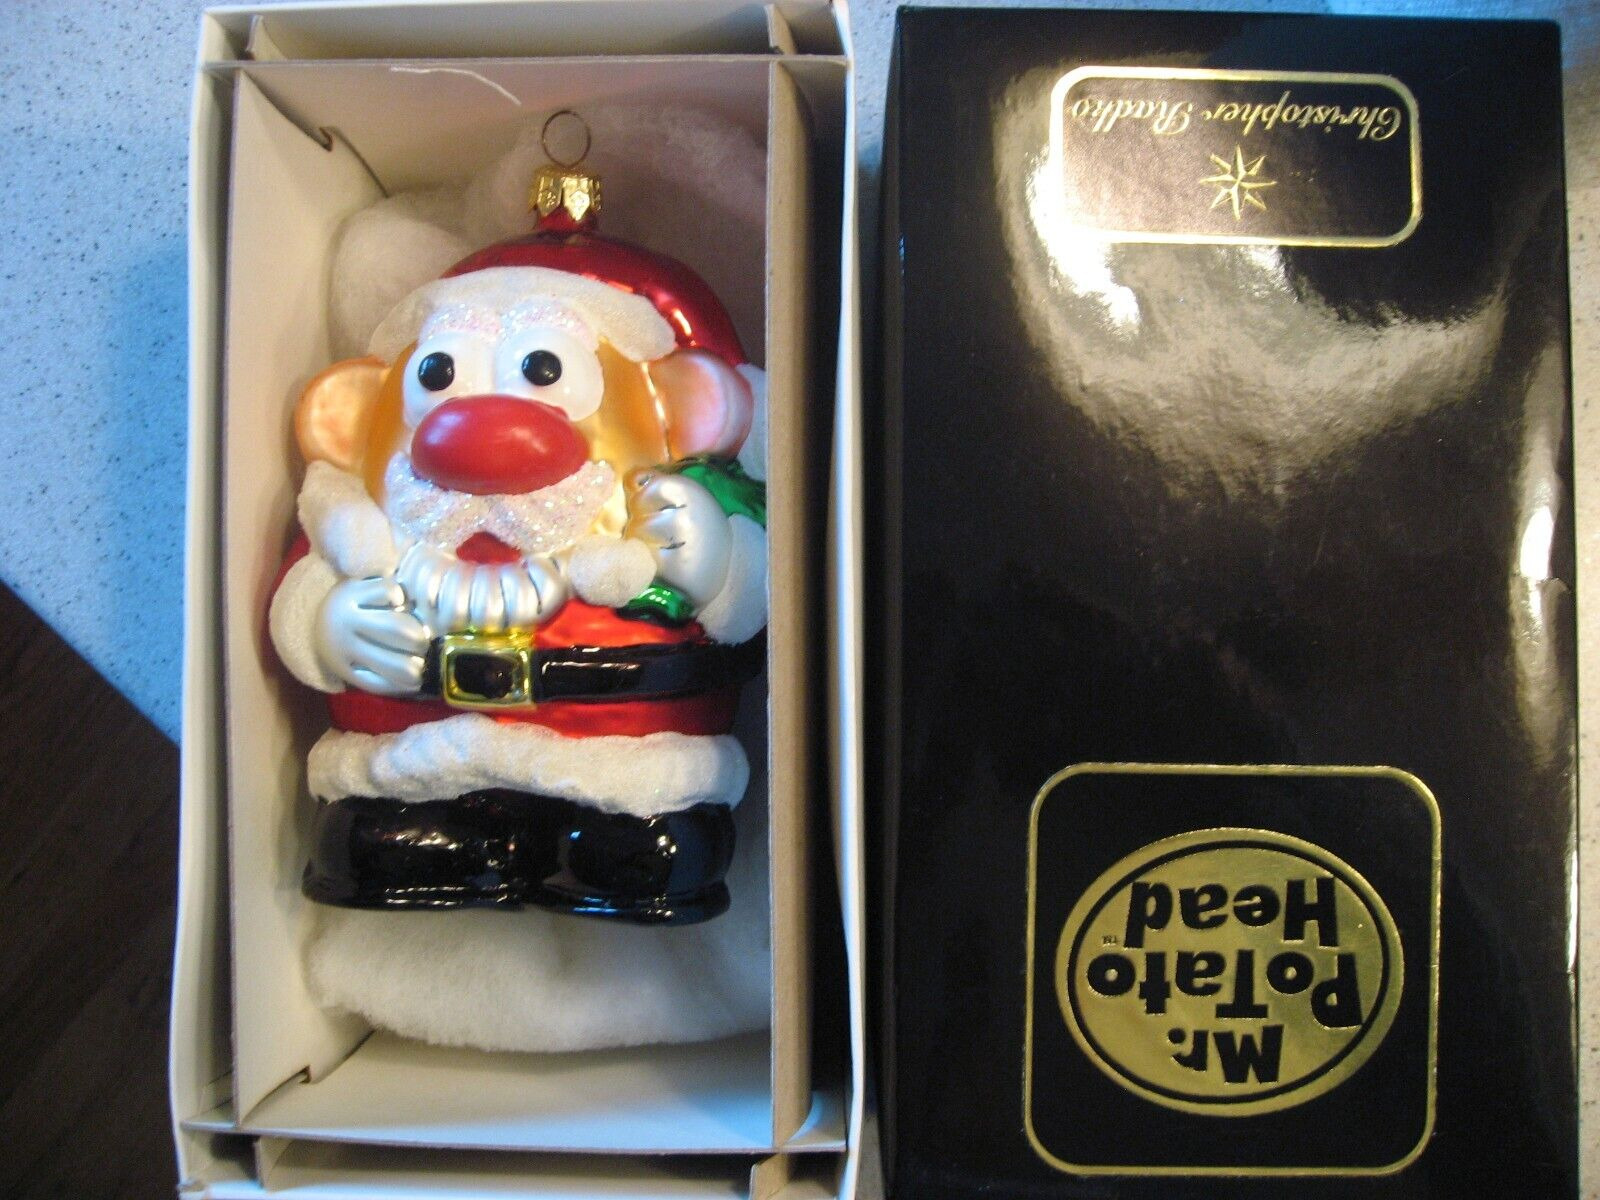 Vtg 1997 Christopher Radko Hasbro Mr. Potato Head Santa Glass Christmas Ornament